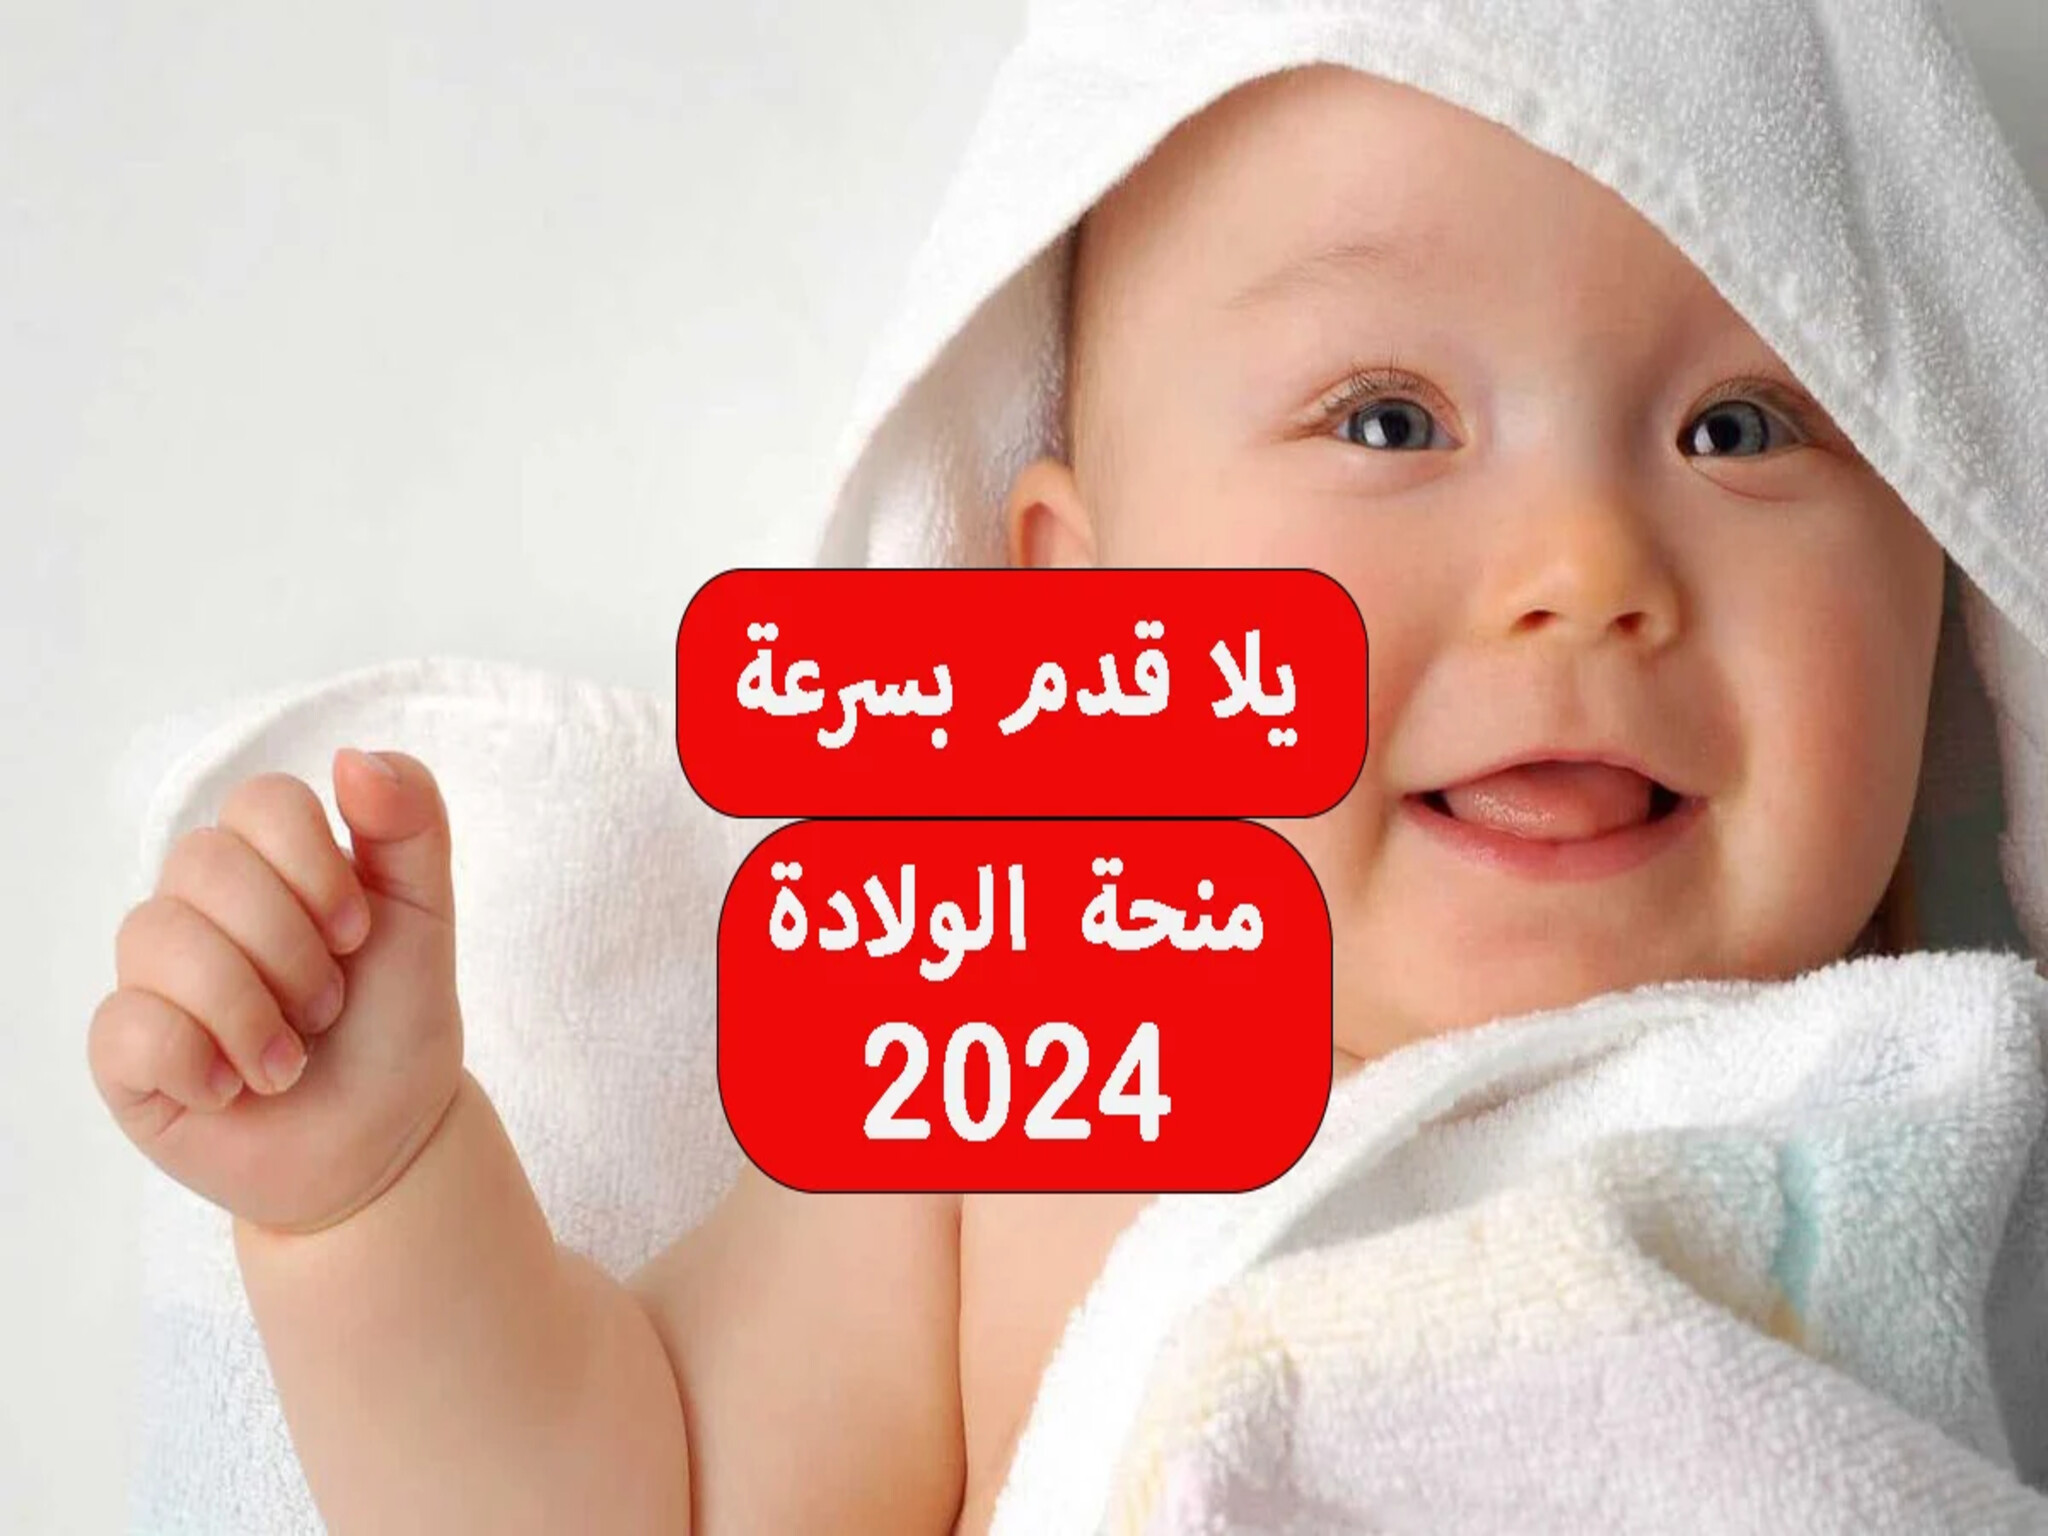 وزارة التضامن الاجتماعي توضح تفاصيل منحة الولادة 2024 و كيفية الحصول عليها